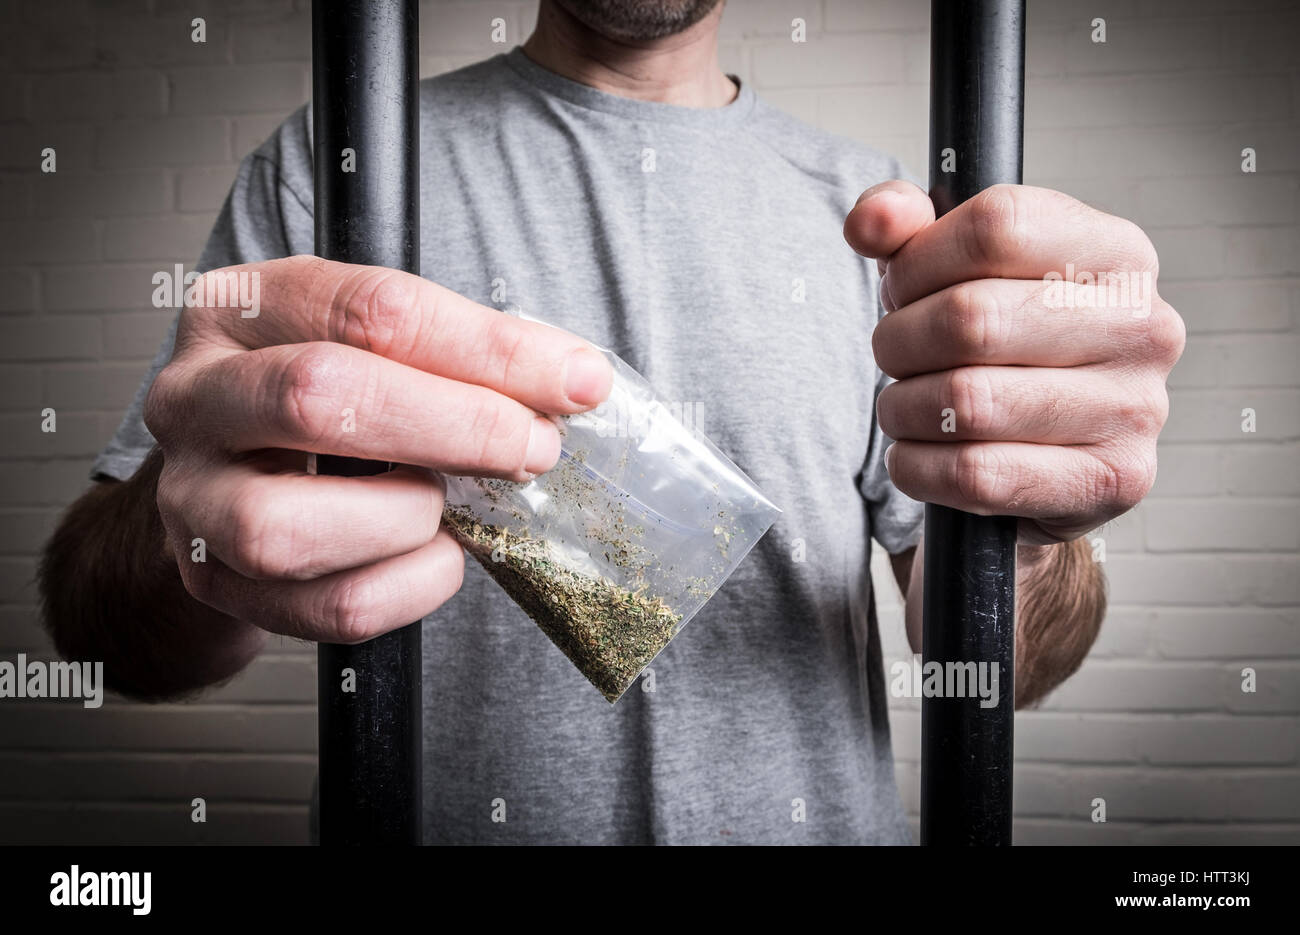 Un prisonnier derrière les barreaux de prison holding drogues ou psychotropes légales Spice (photo posée par modèle pour illustrer le problème des drogues dans les prisons du Royaume-Uni) Banque D'Images